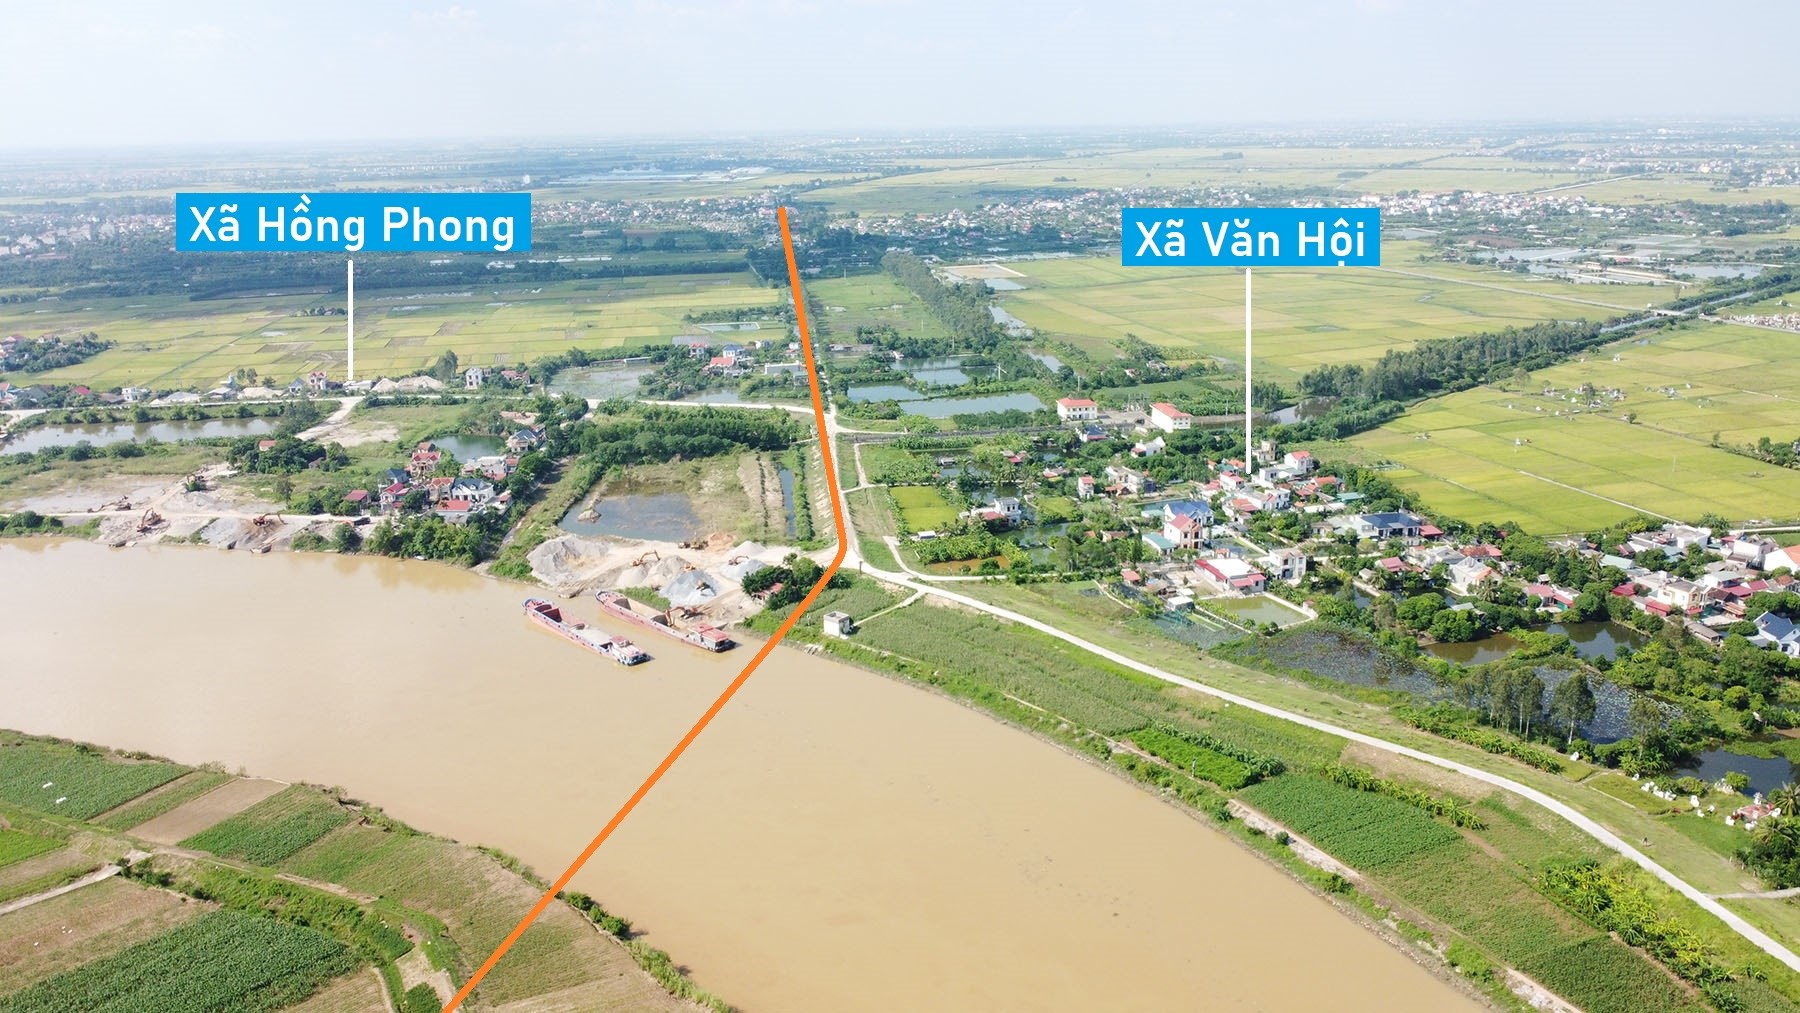 Toàn cảnh vị trí dự kiến xây cầu vượt sông Luộc nối Hải Dương - Thái Bình